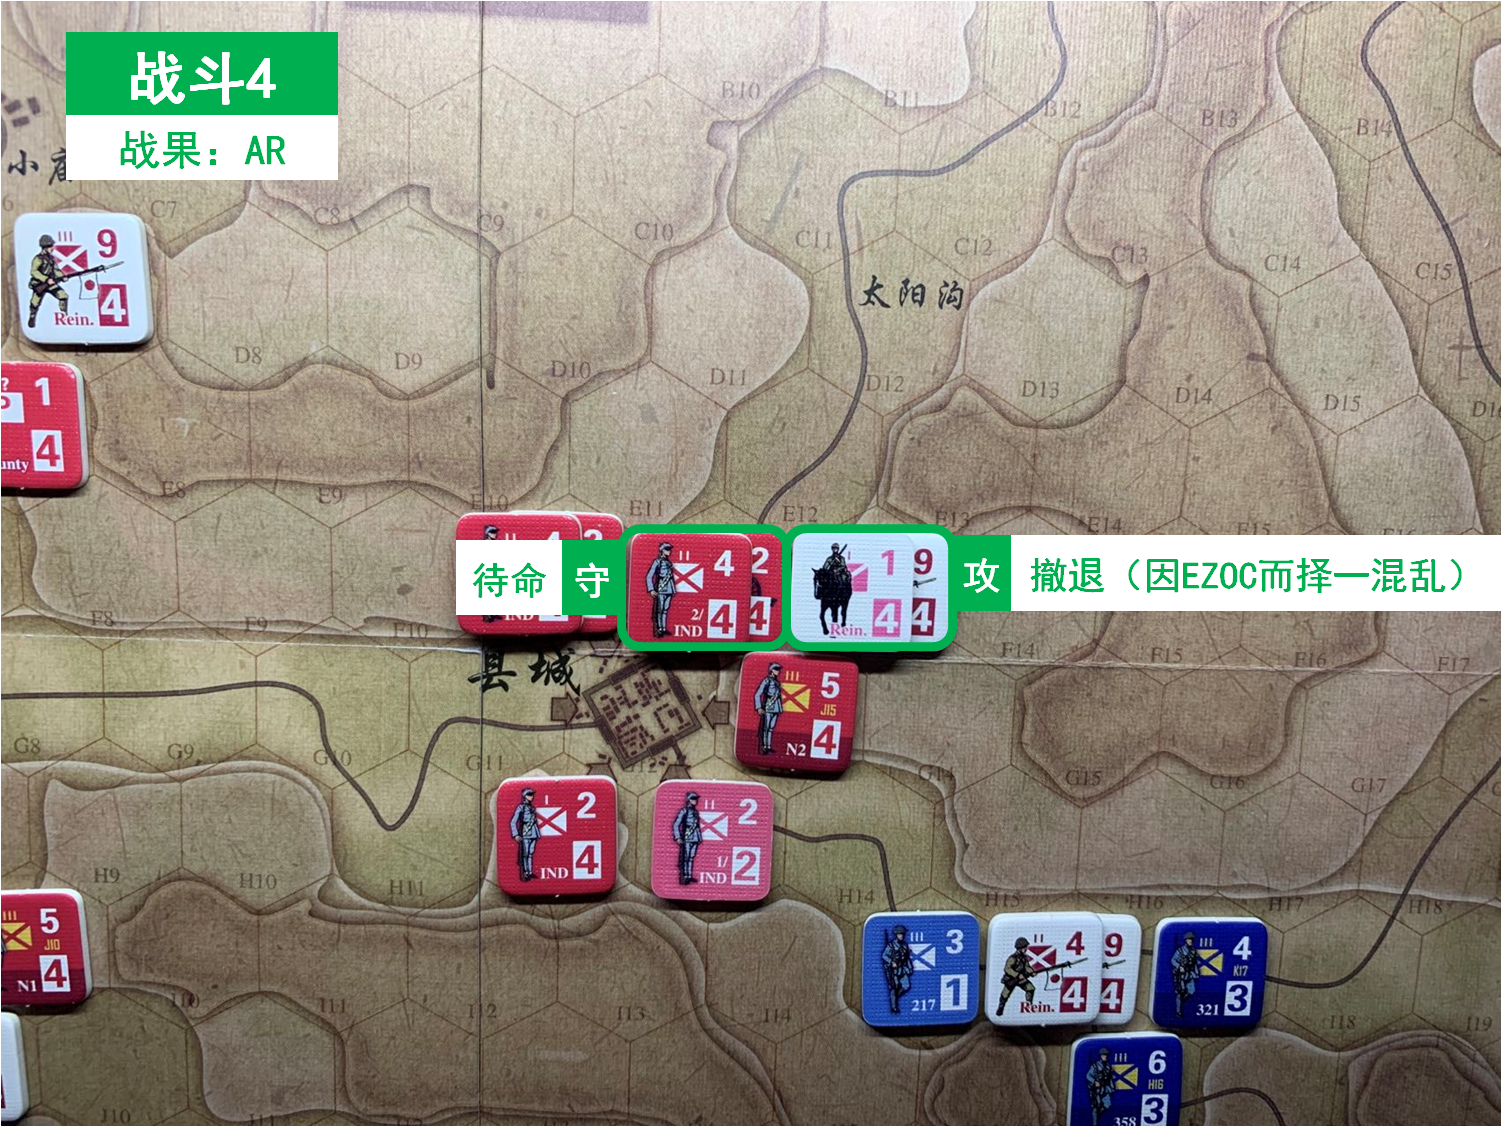 第四回合 日方战斗阶段 战斗4 战斗结果